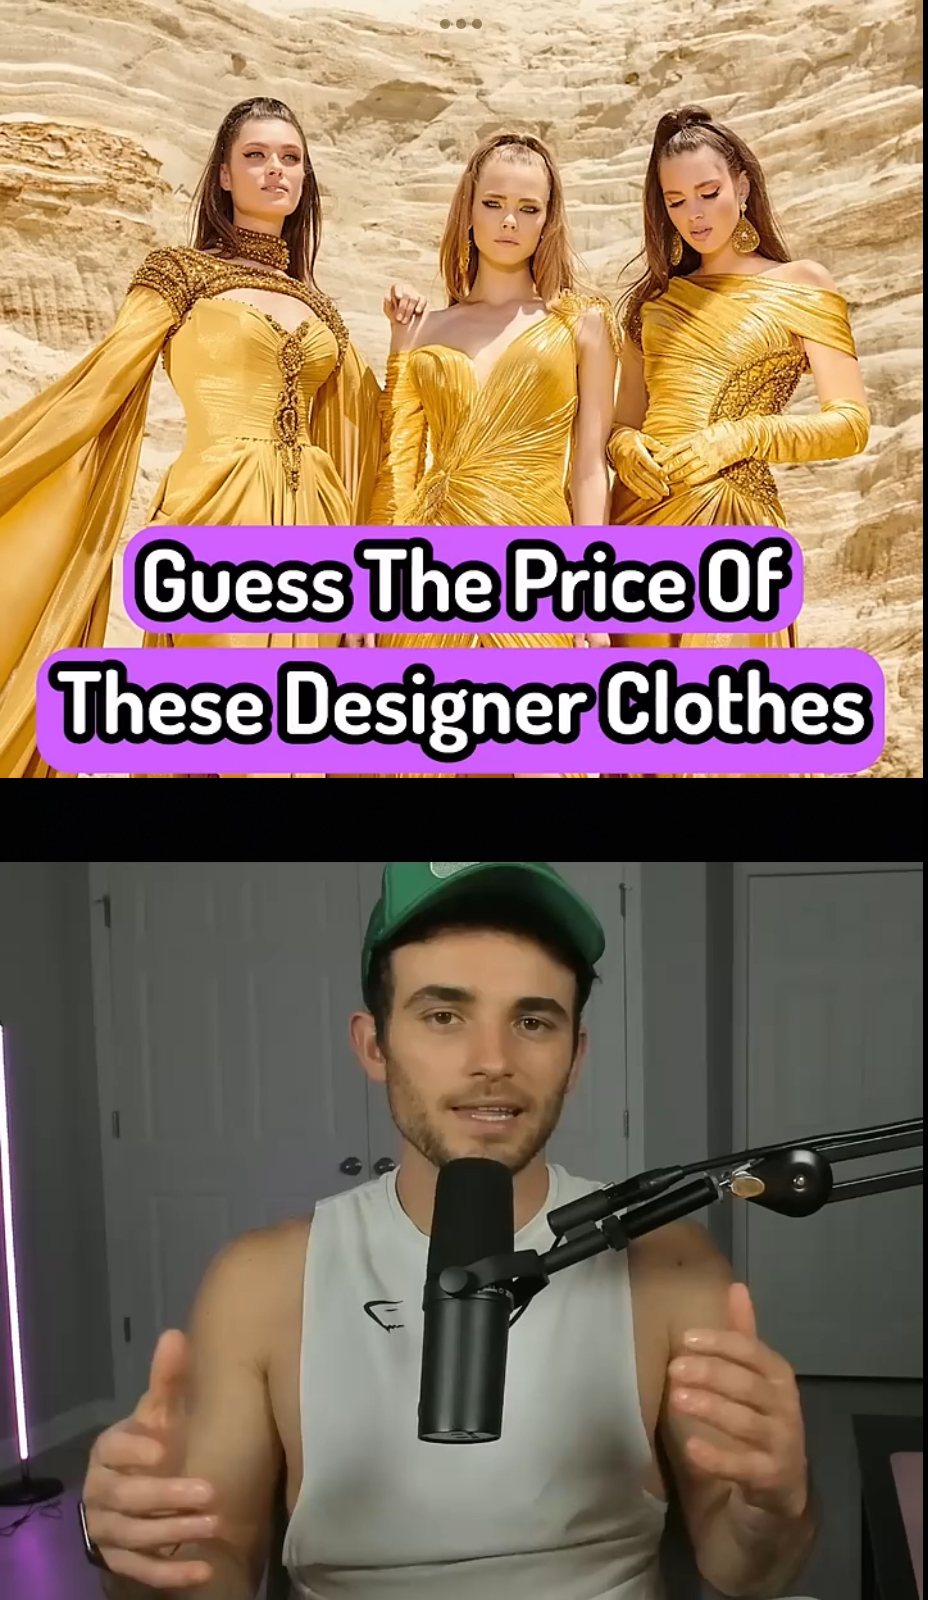 Давайте попробуем угадать цены на эту дизайнерскую одежду.